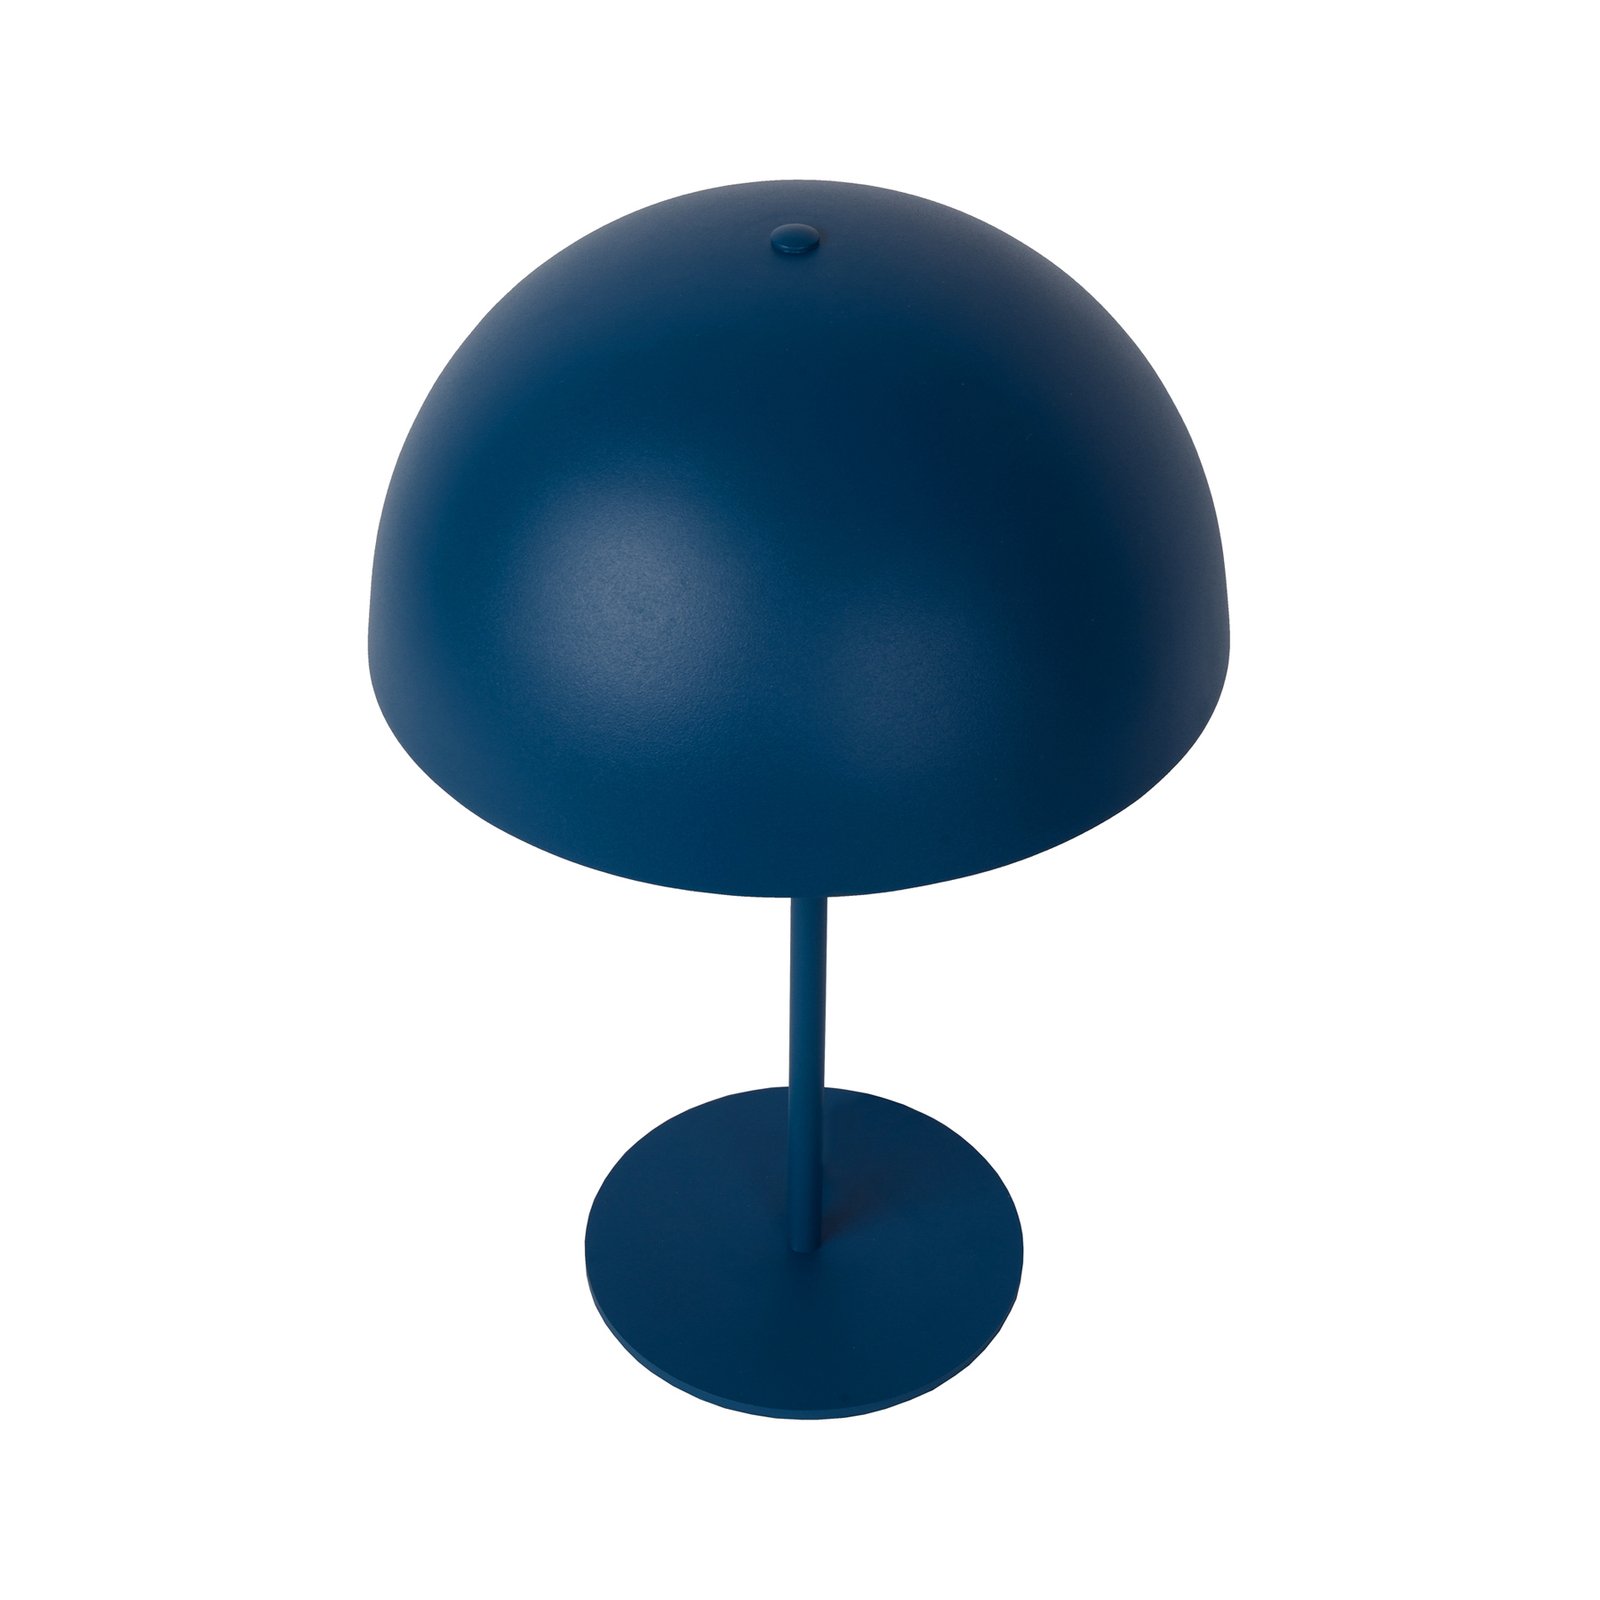 Siemon bordlampe i stål, Ø 25 cm, blå